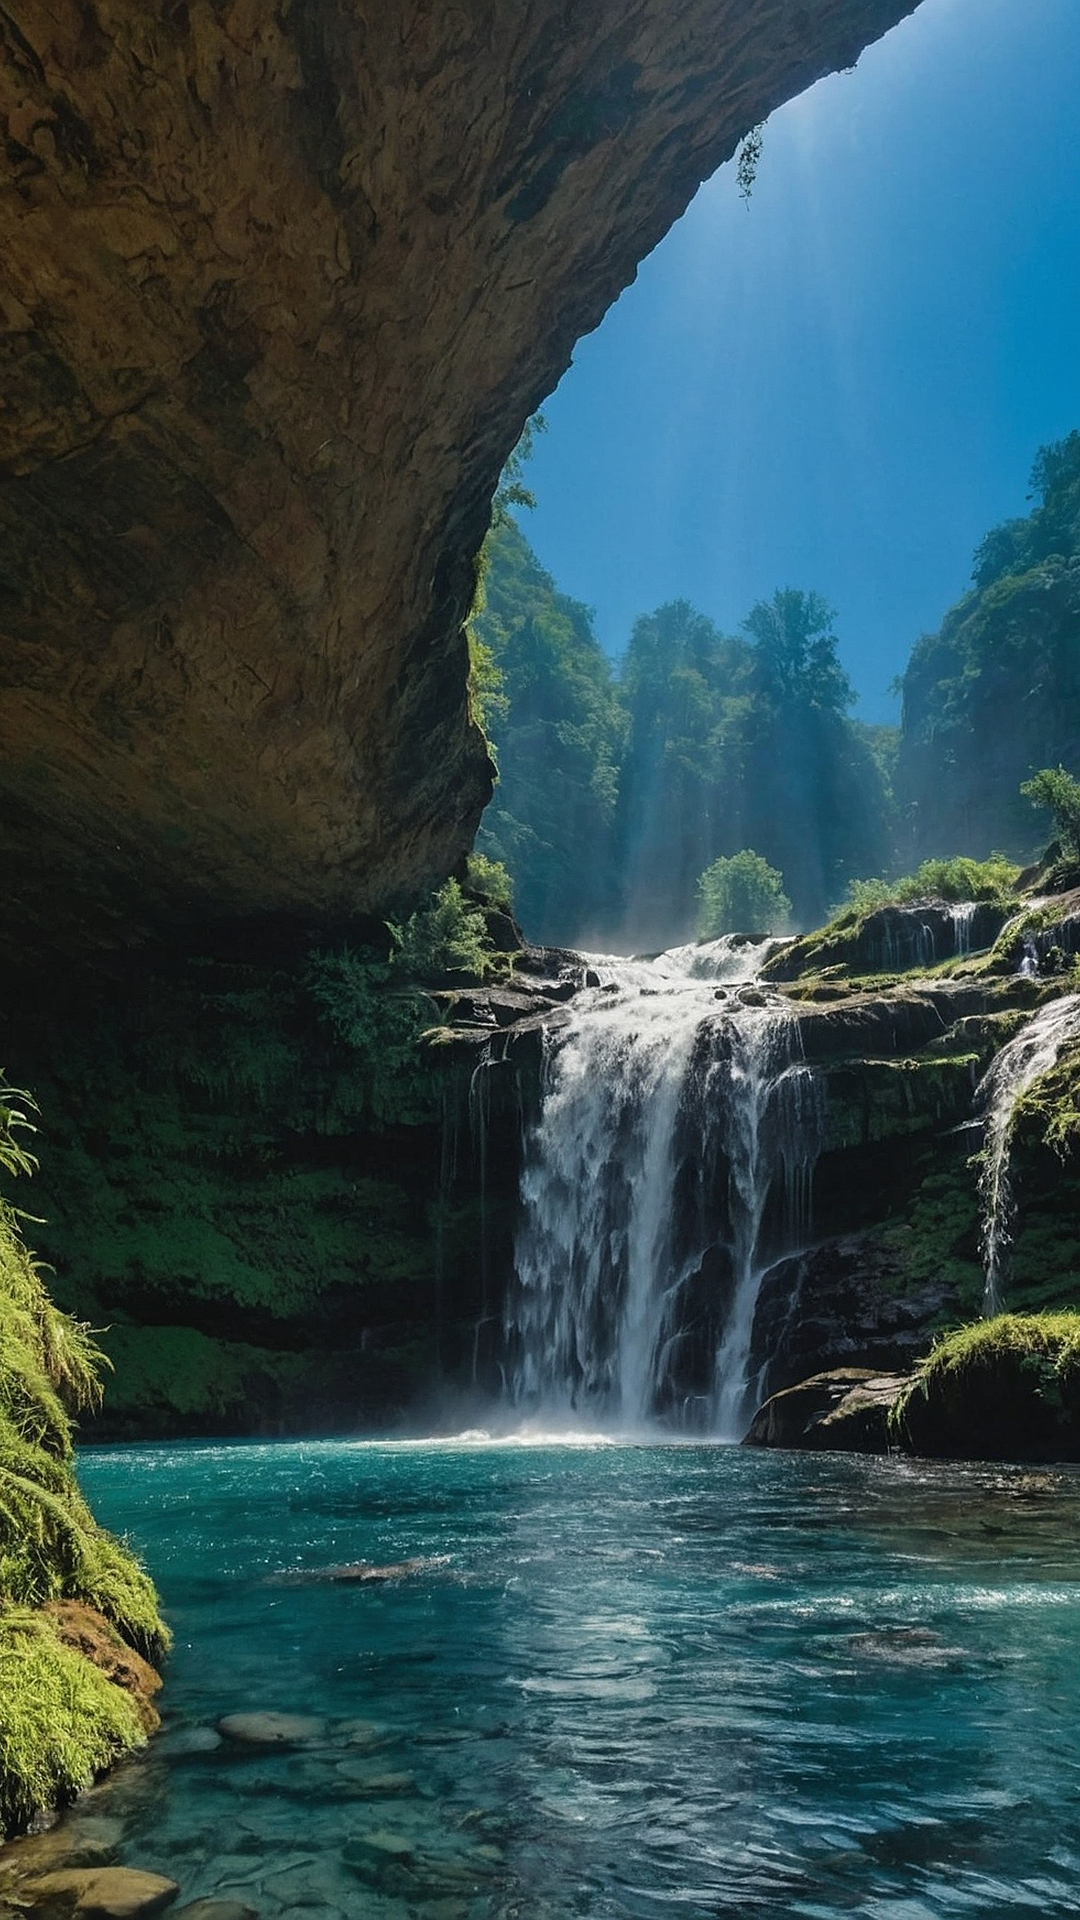 Echoing Falls: Stunning Waterfall Wallpaper Displays